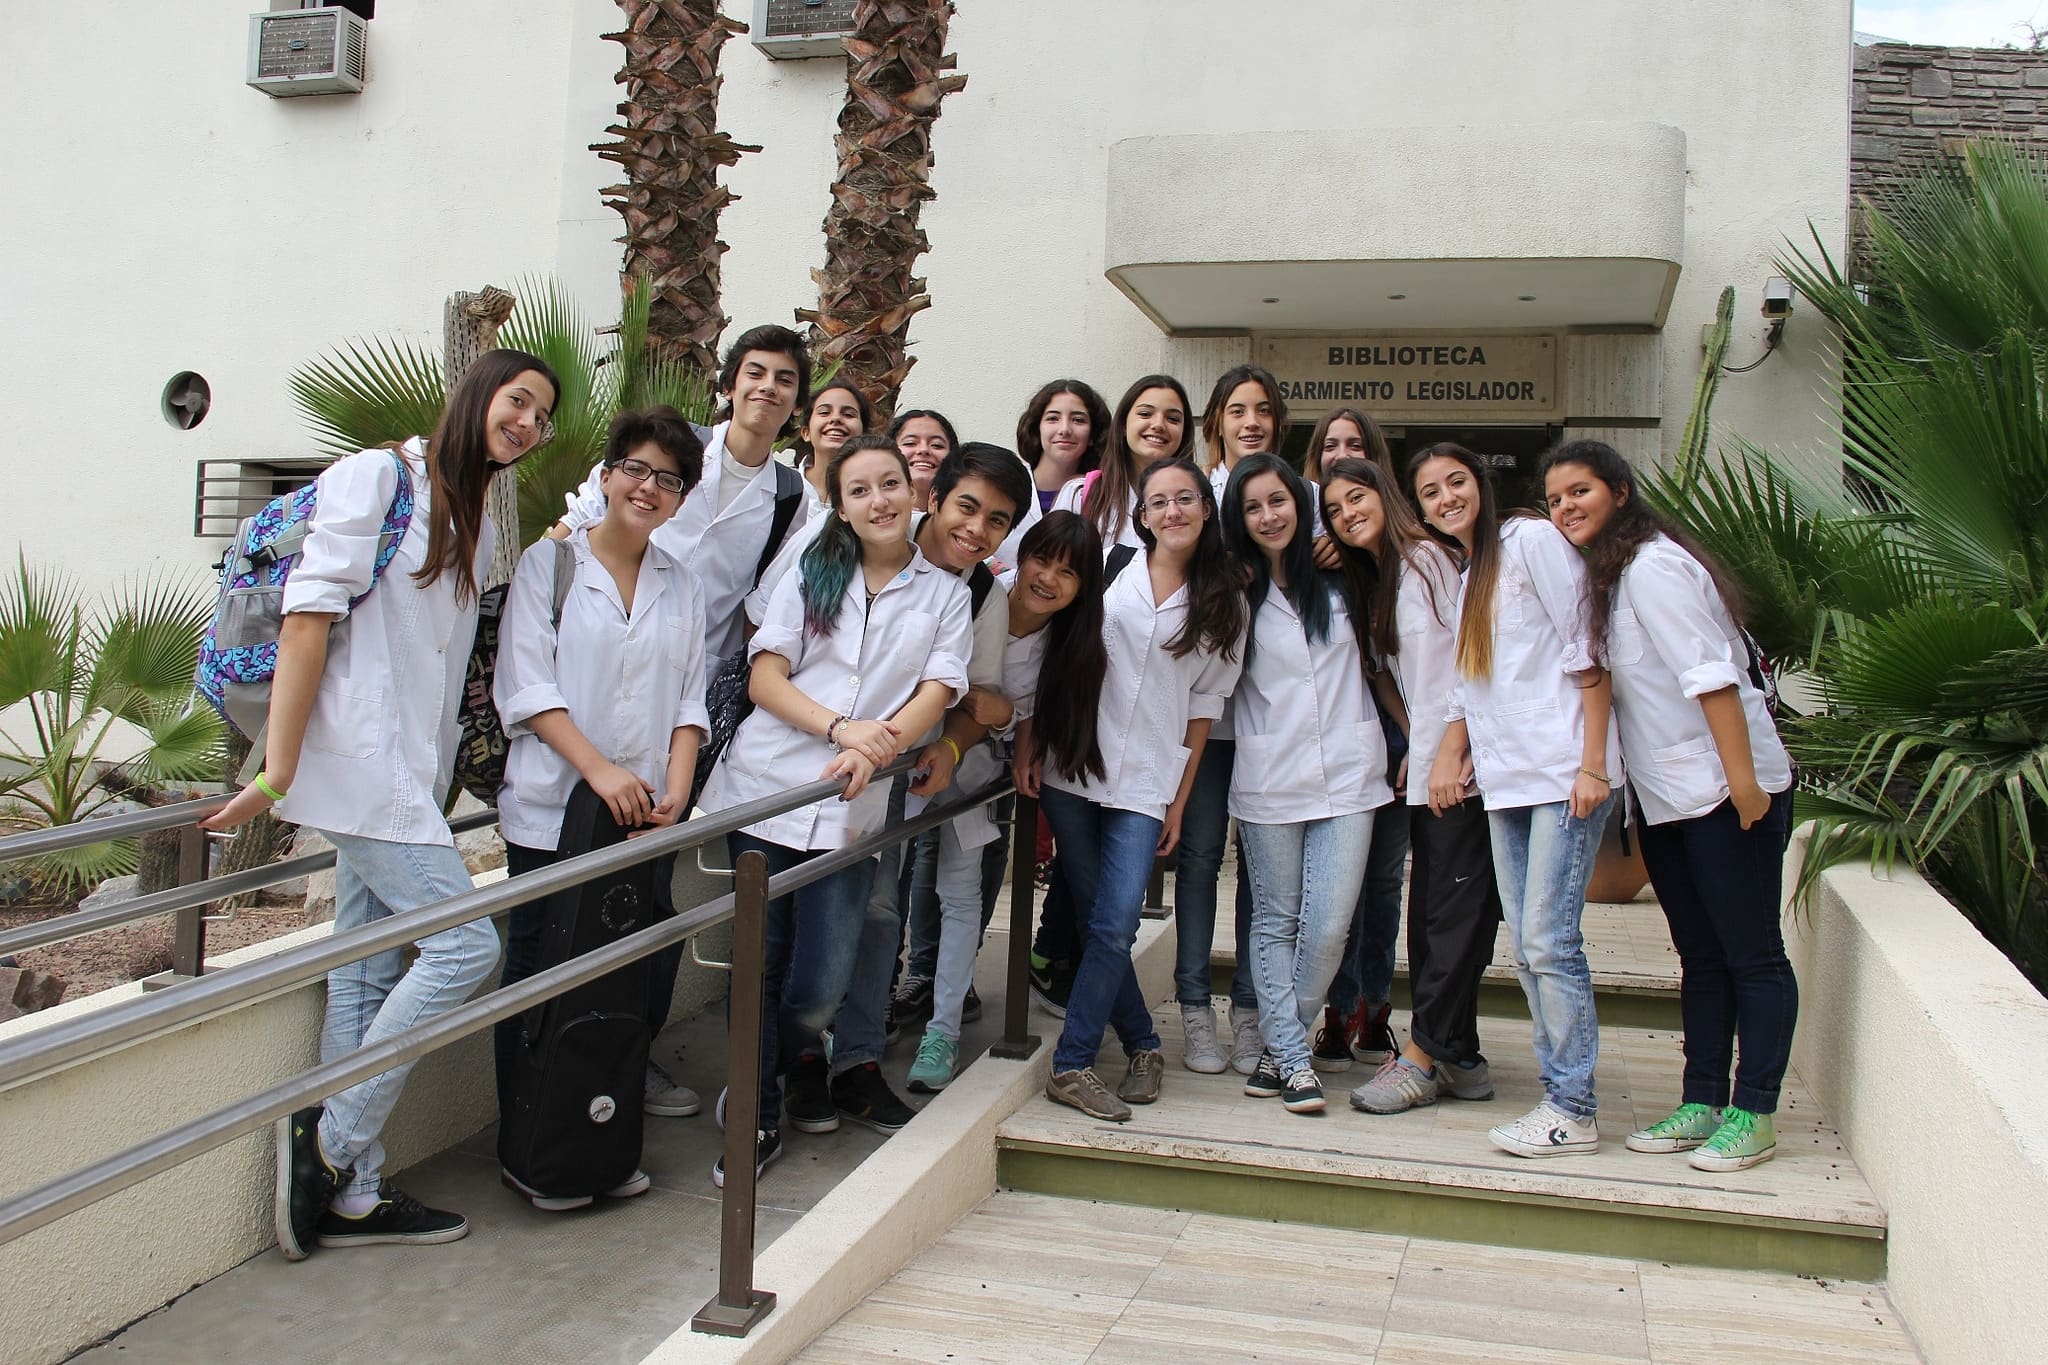 Alumnos del Colegio Central Universitario visitaron la Biblioteca Sarmiento Legislador.